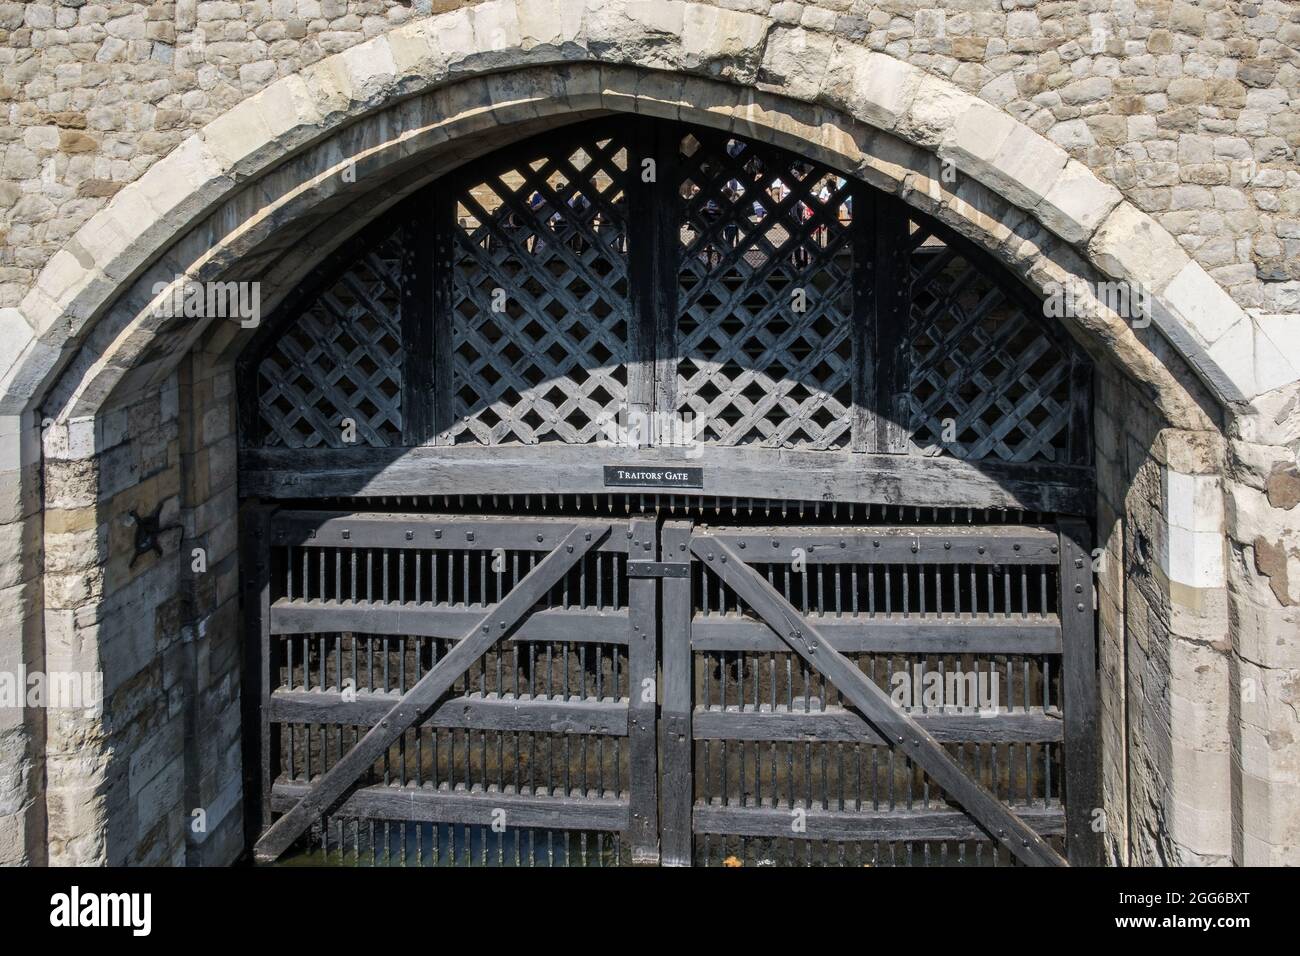 Der berüchtigte Eingang zum Tower of London, Traitors Gate, ist der Eingang zum Tower of London Complex und gehört zum St. Thomas' Tower. Stockfoto